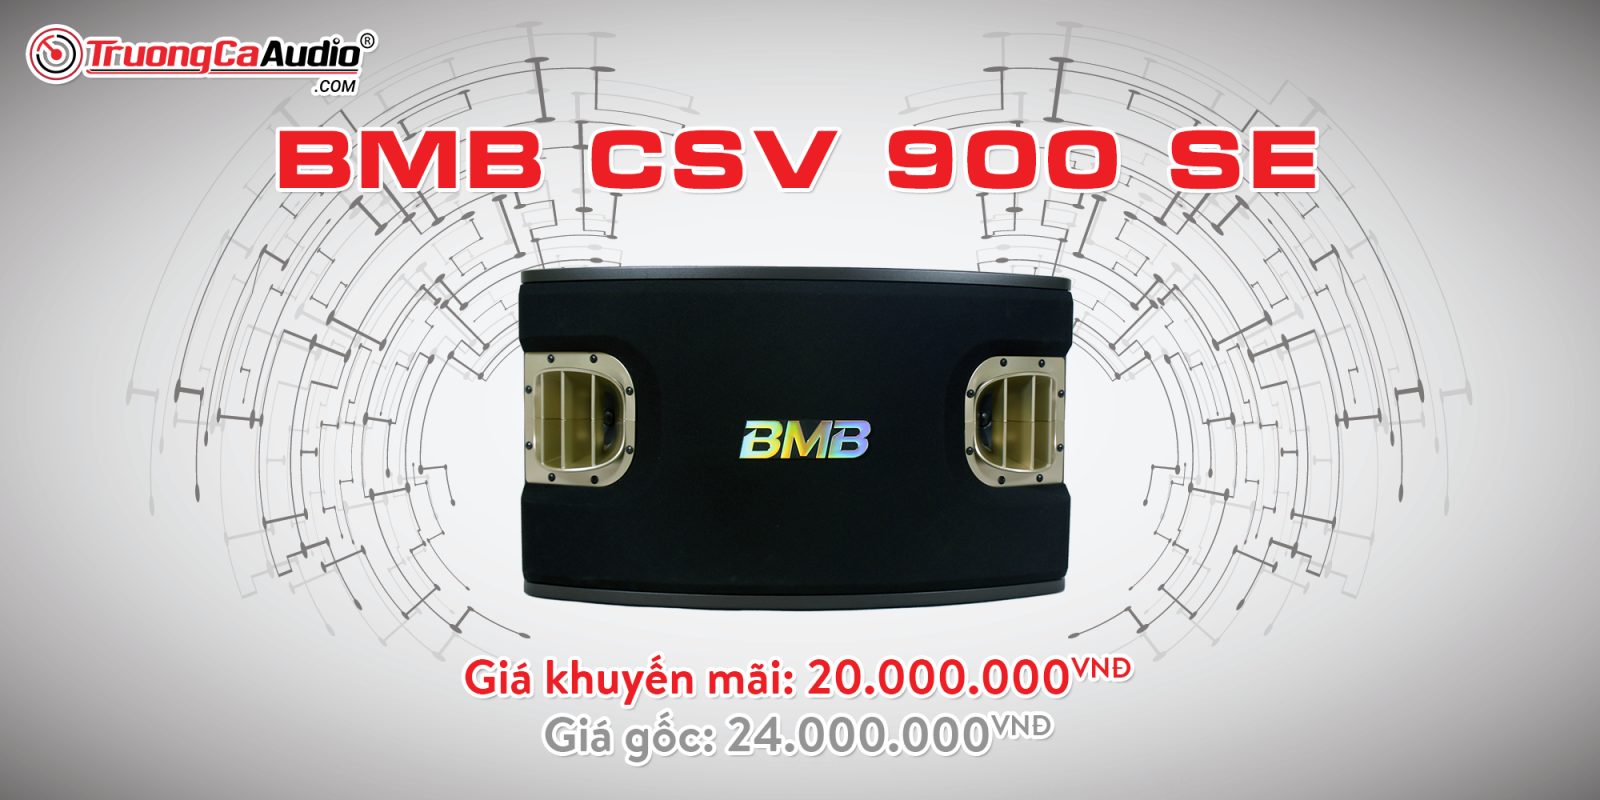 Loa BMB CSV 900 SE